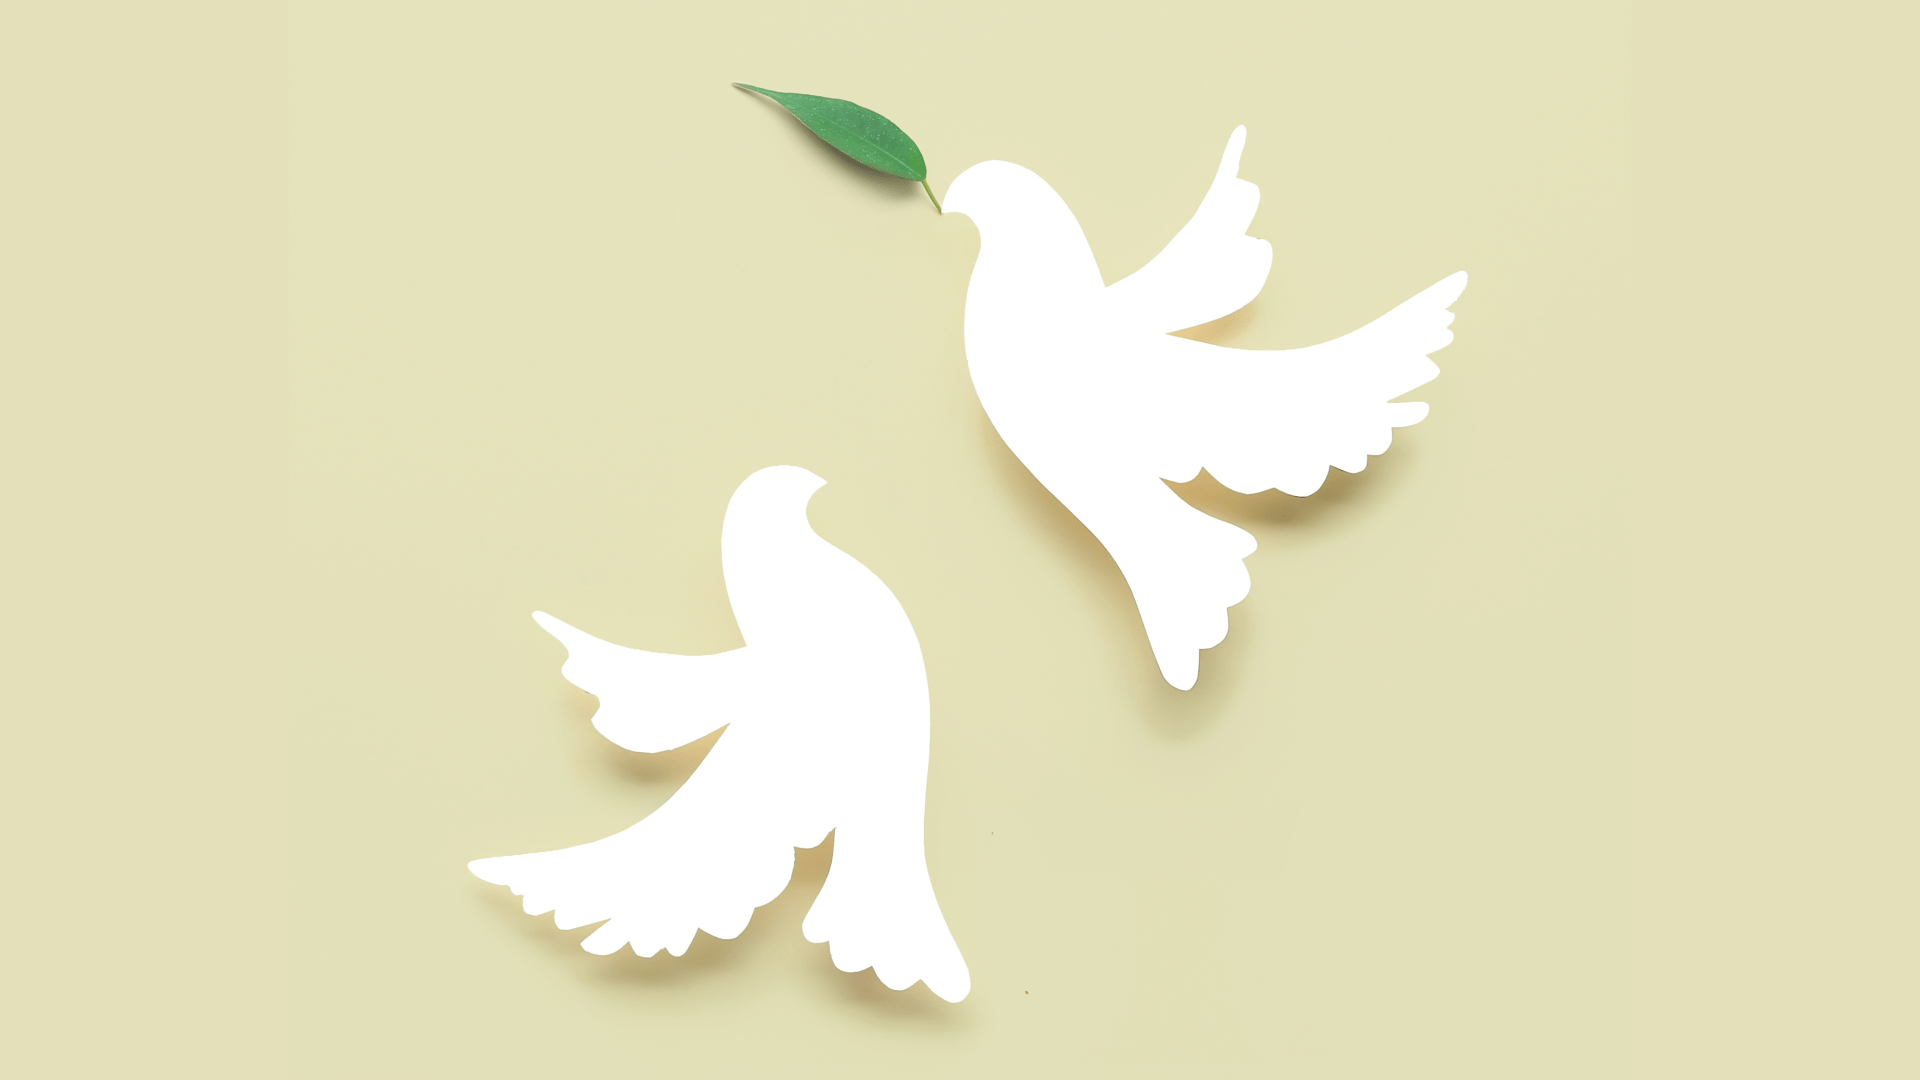 Vredes duiven